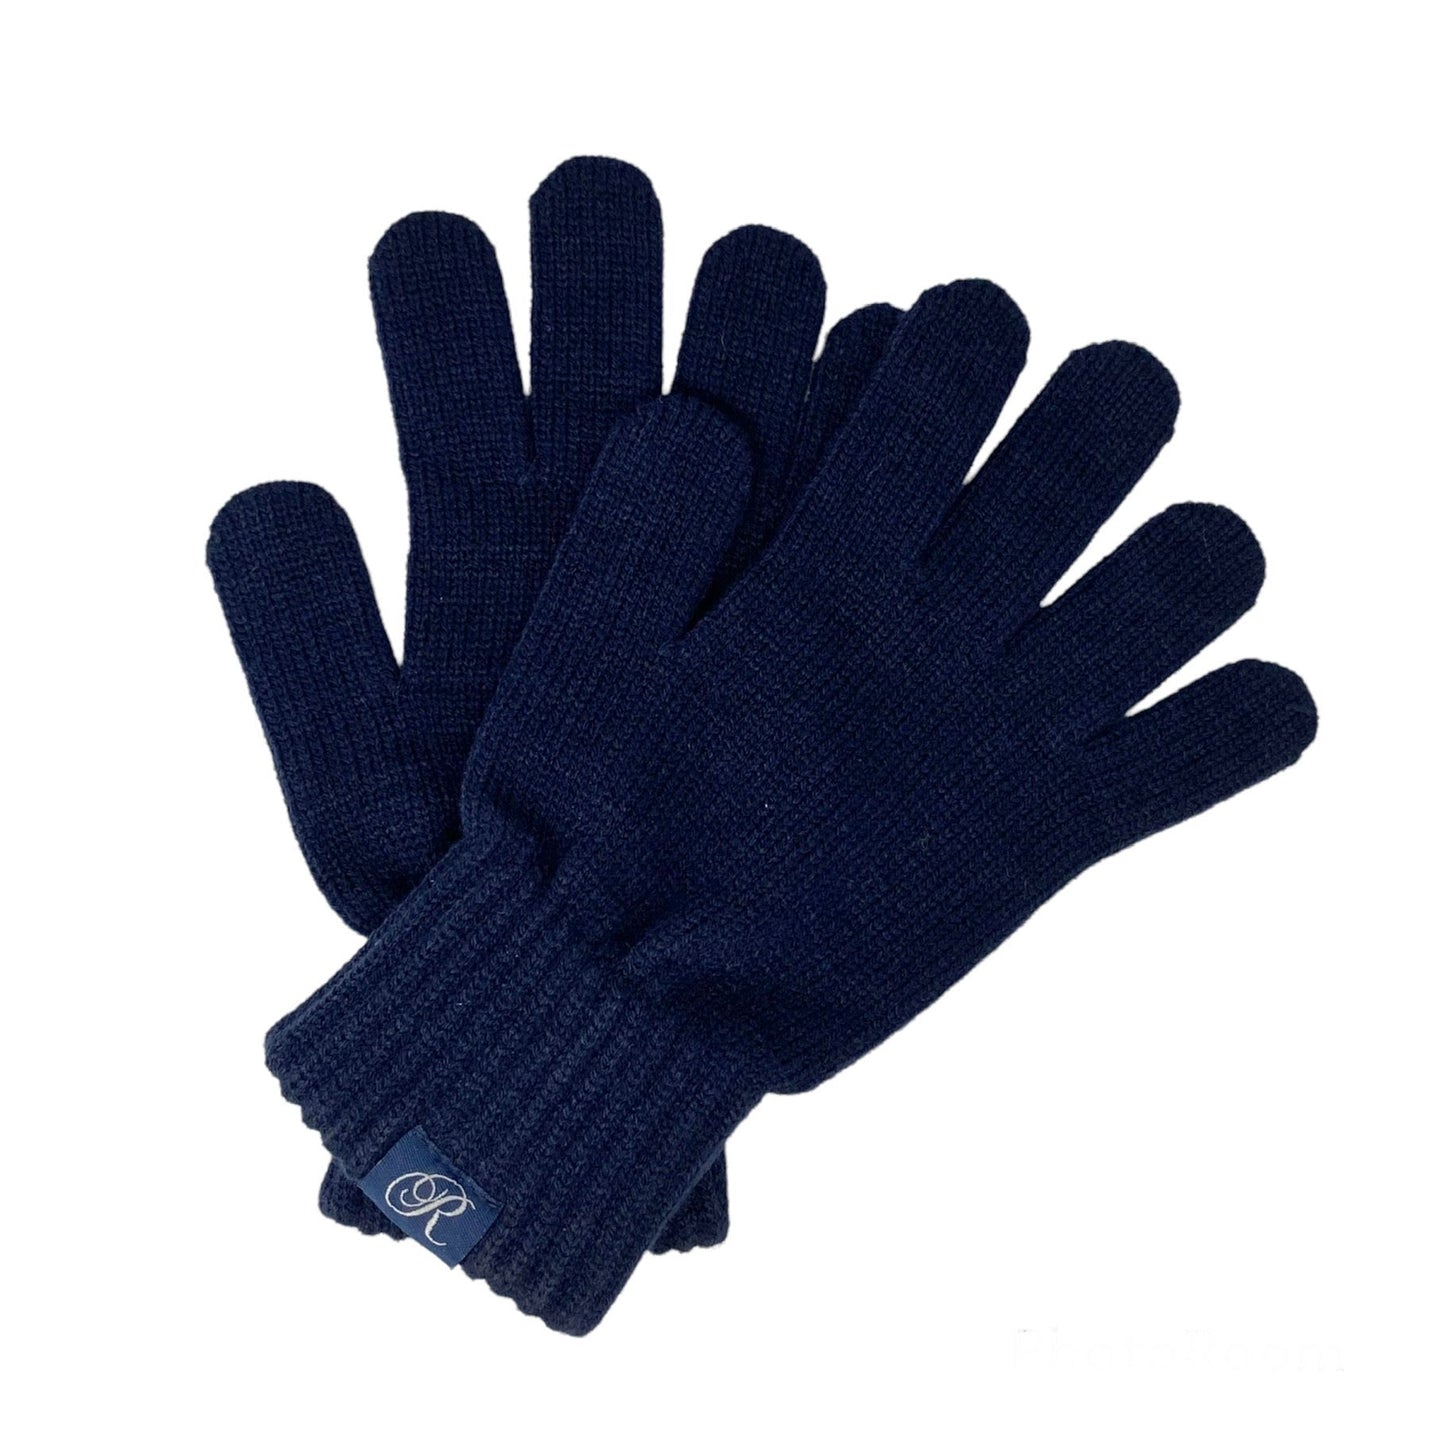 Featured Navy R Gloves